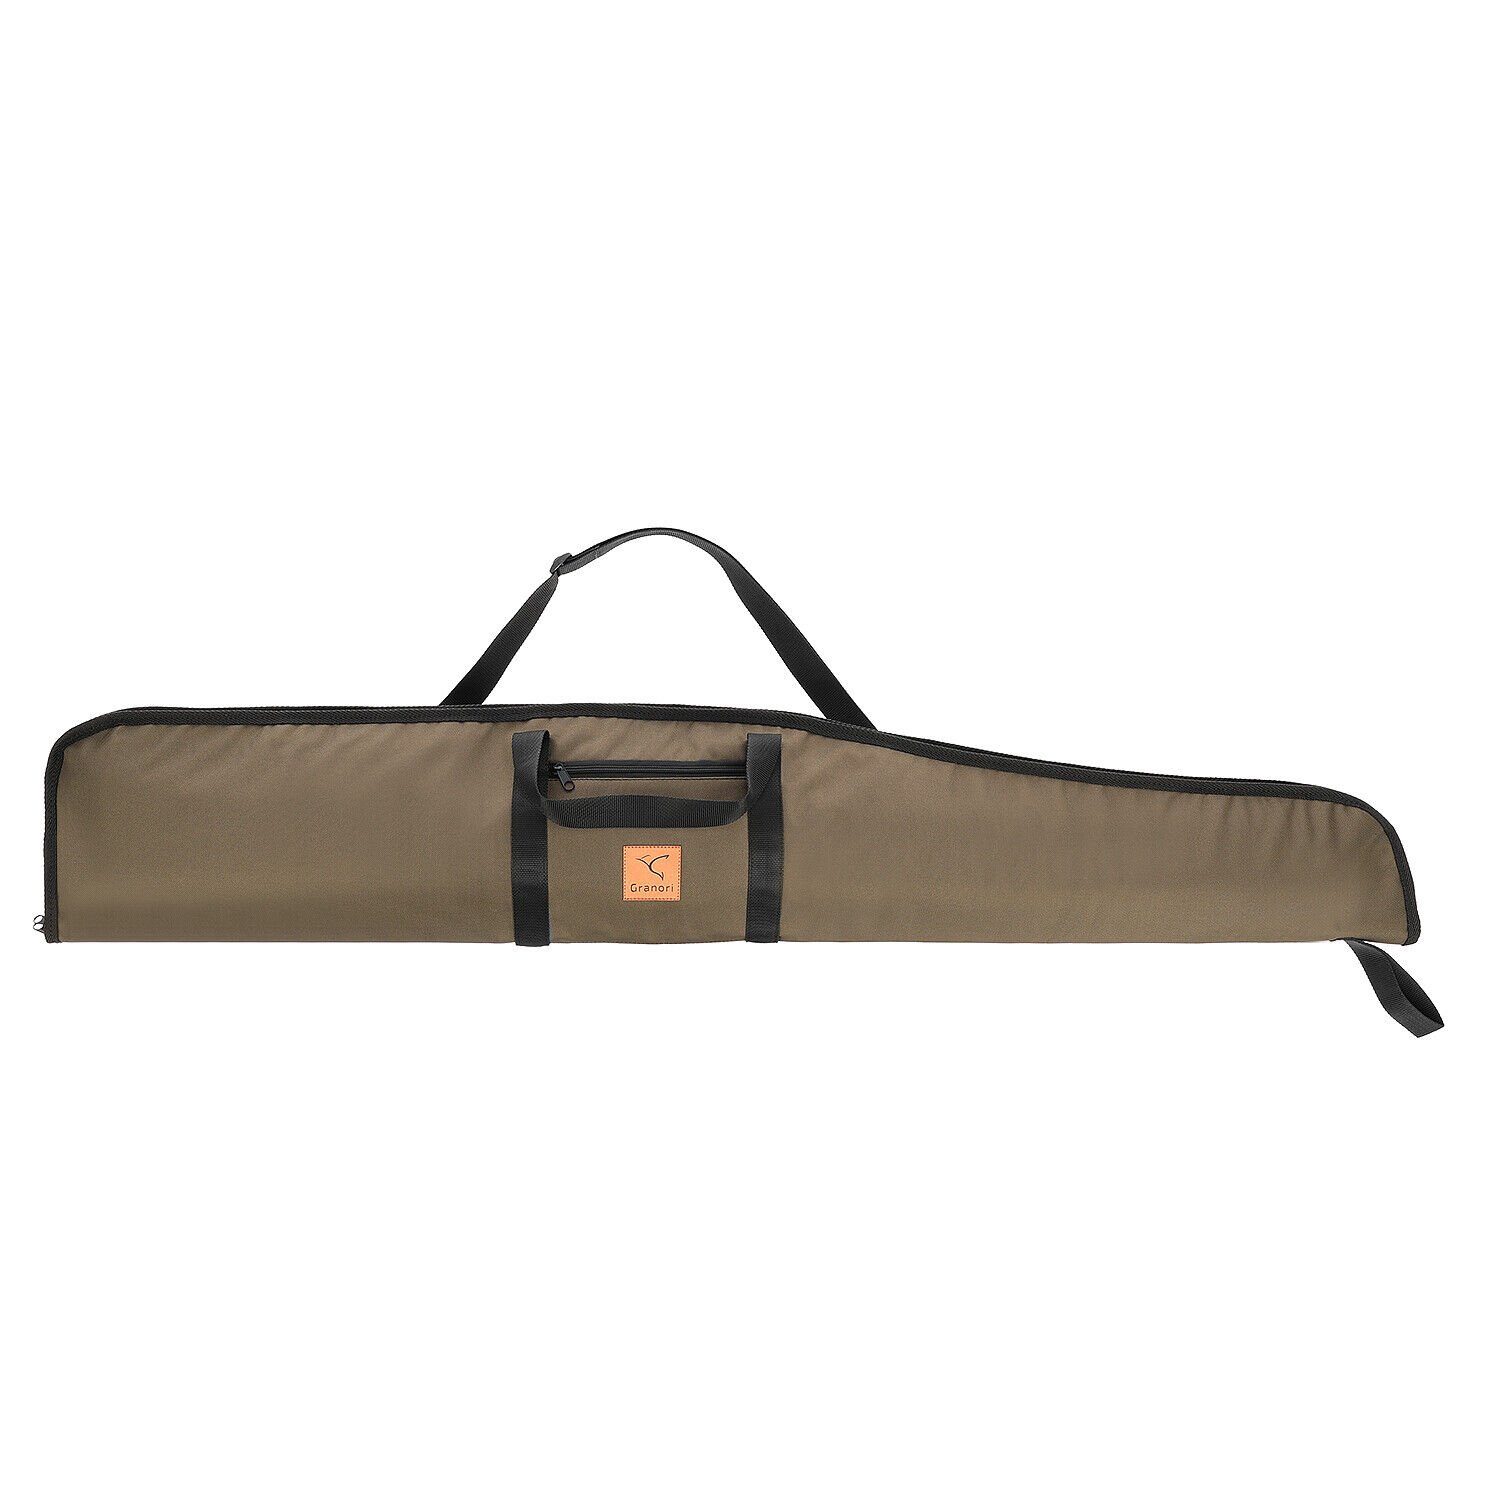 Granori Sporttasche für Luftgewehr mit Zielfernrohr, Waffentasche gepolstert 120 cm Länge, abschließbar, mit Außentasche und verstellbarem Tragegurt, wetterfest Oliv